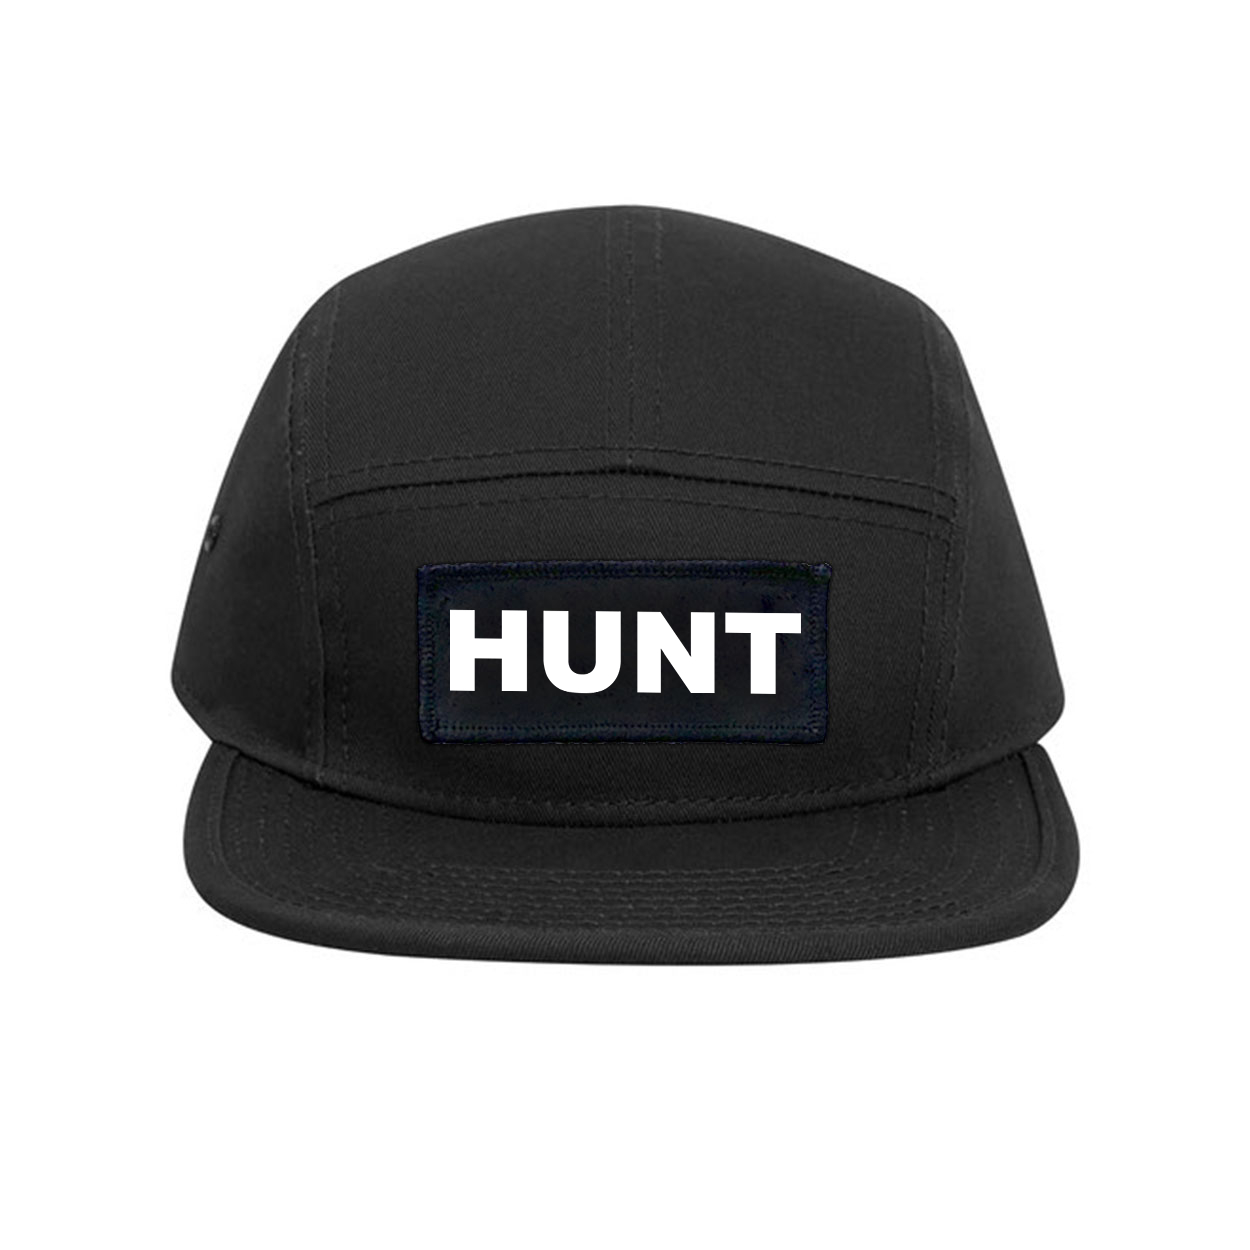 Hunt Brand Logo Classic Woven Patch Classic Camper Hat Black